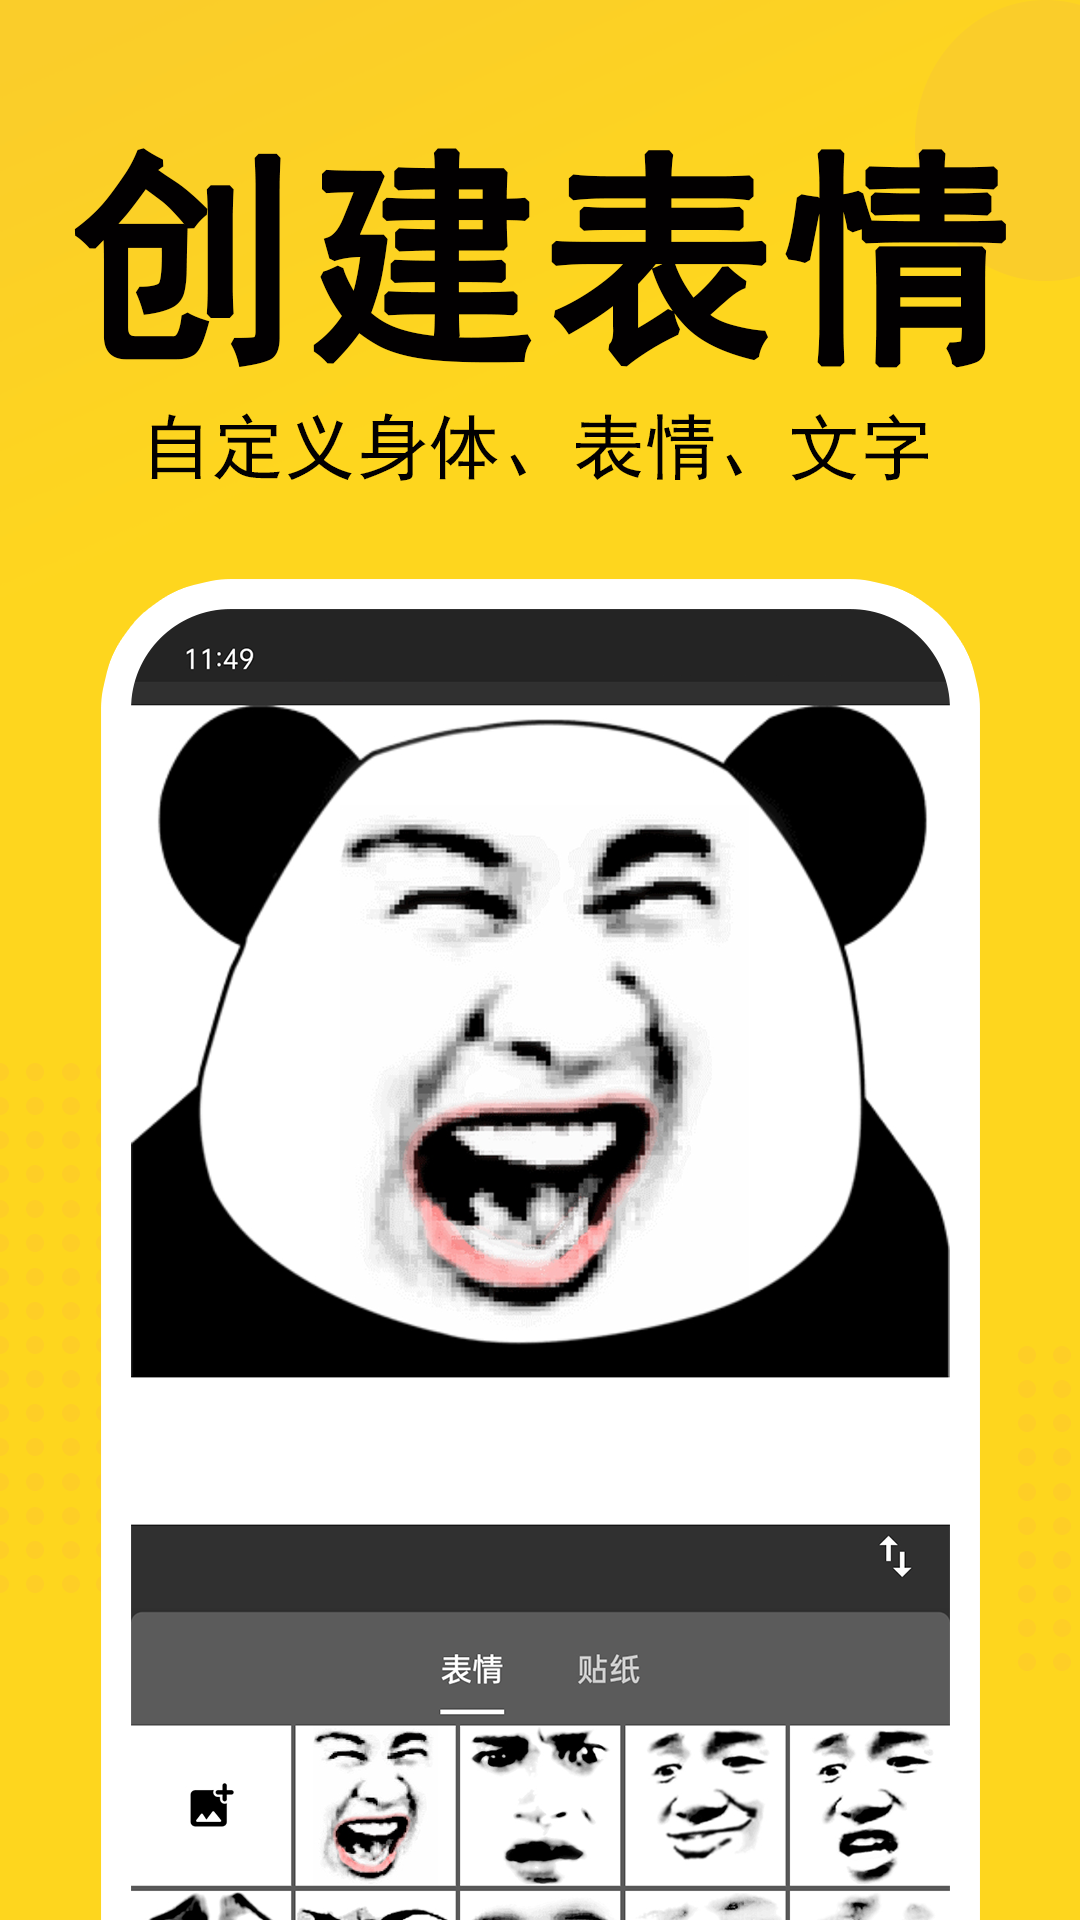 熊猫表情包截图2